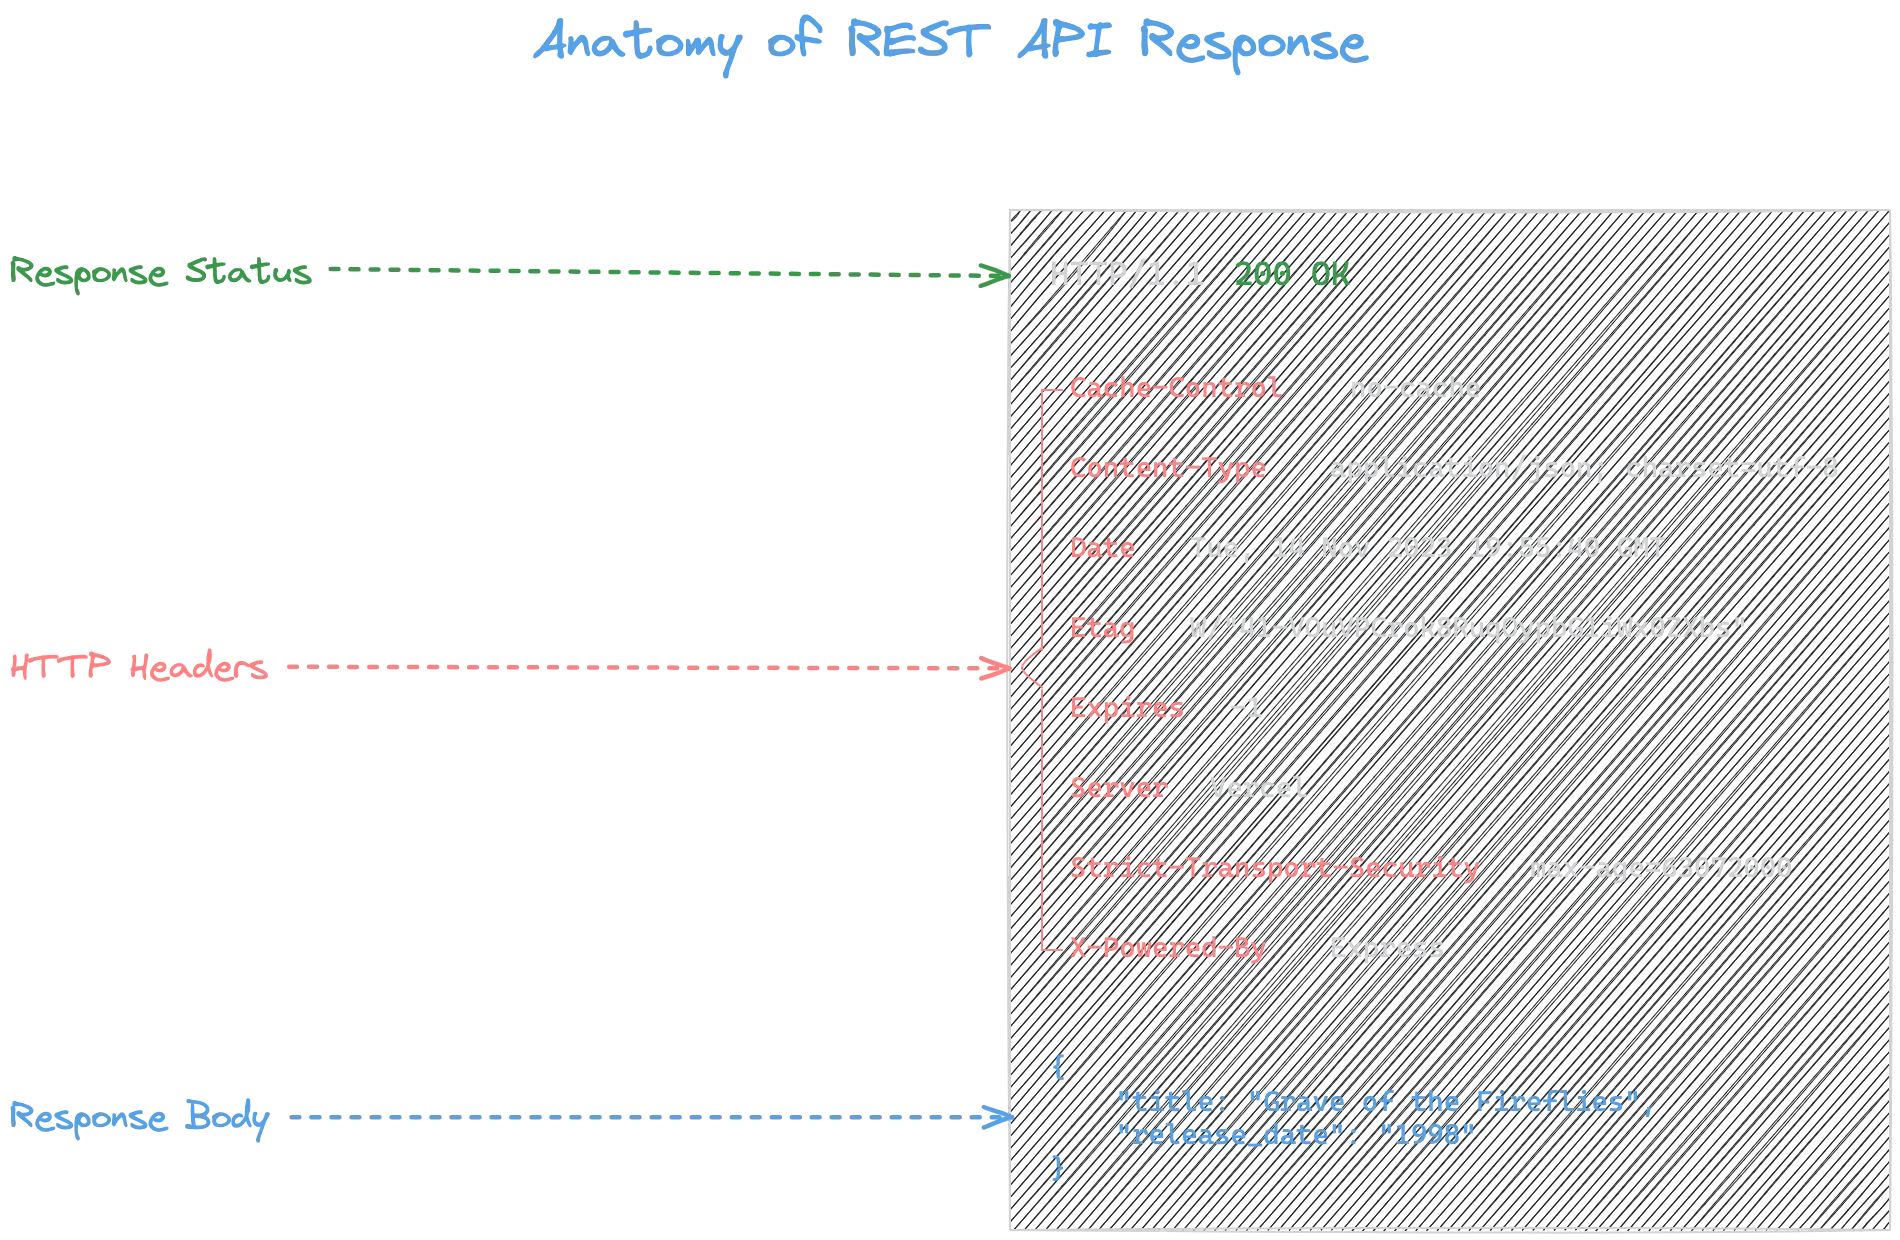 Anatomy of REST API Response